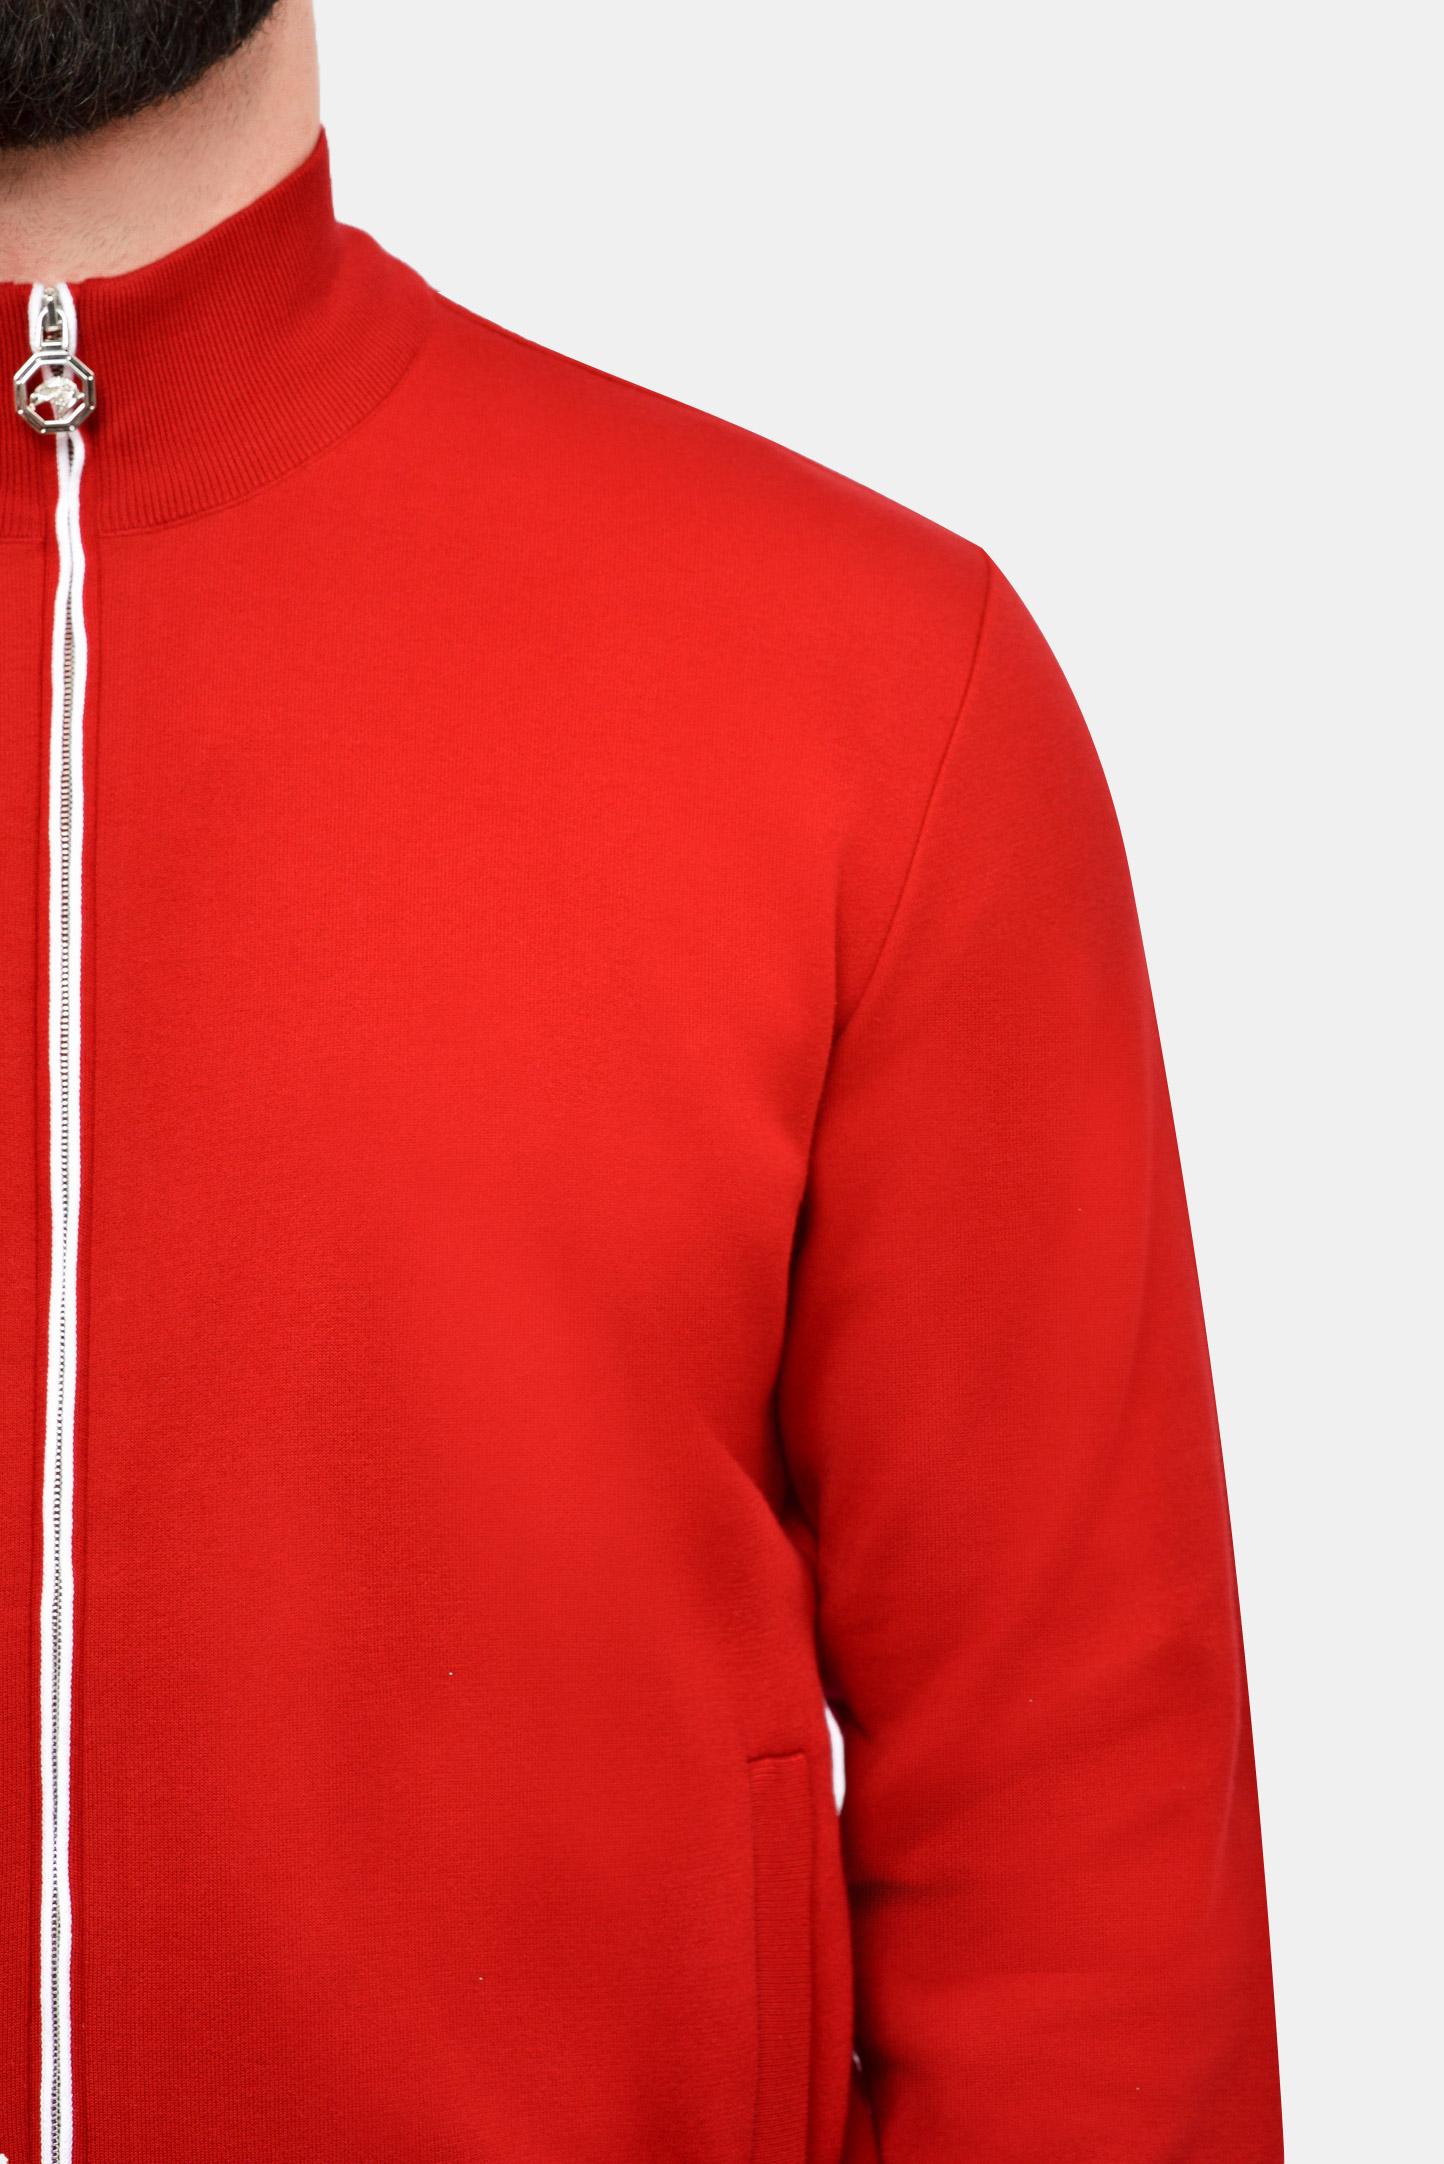 Куртка спорт STEFANO RICCI K616182R31 F20108, цвет: Красный, Мужской